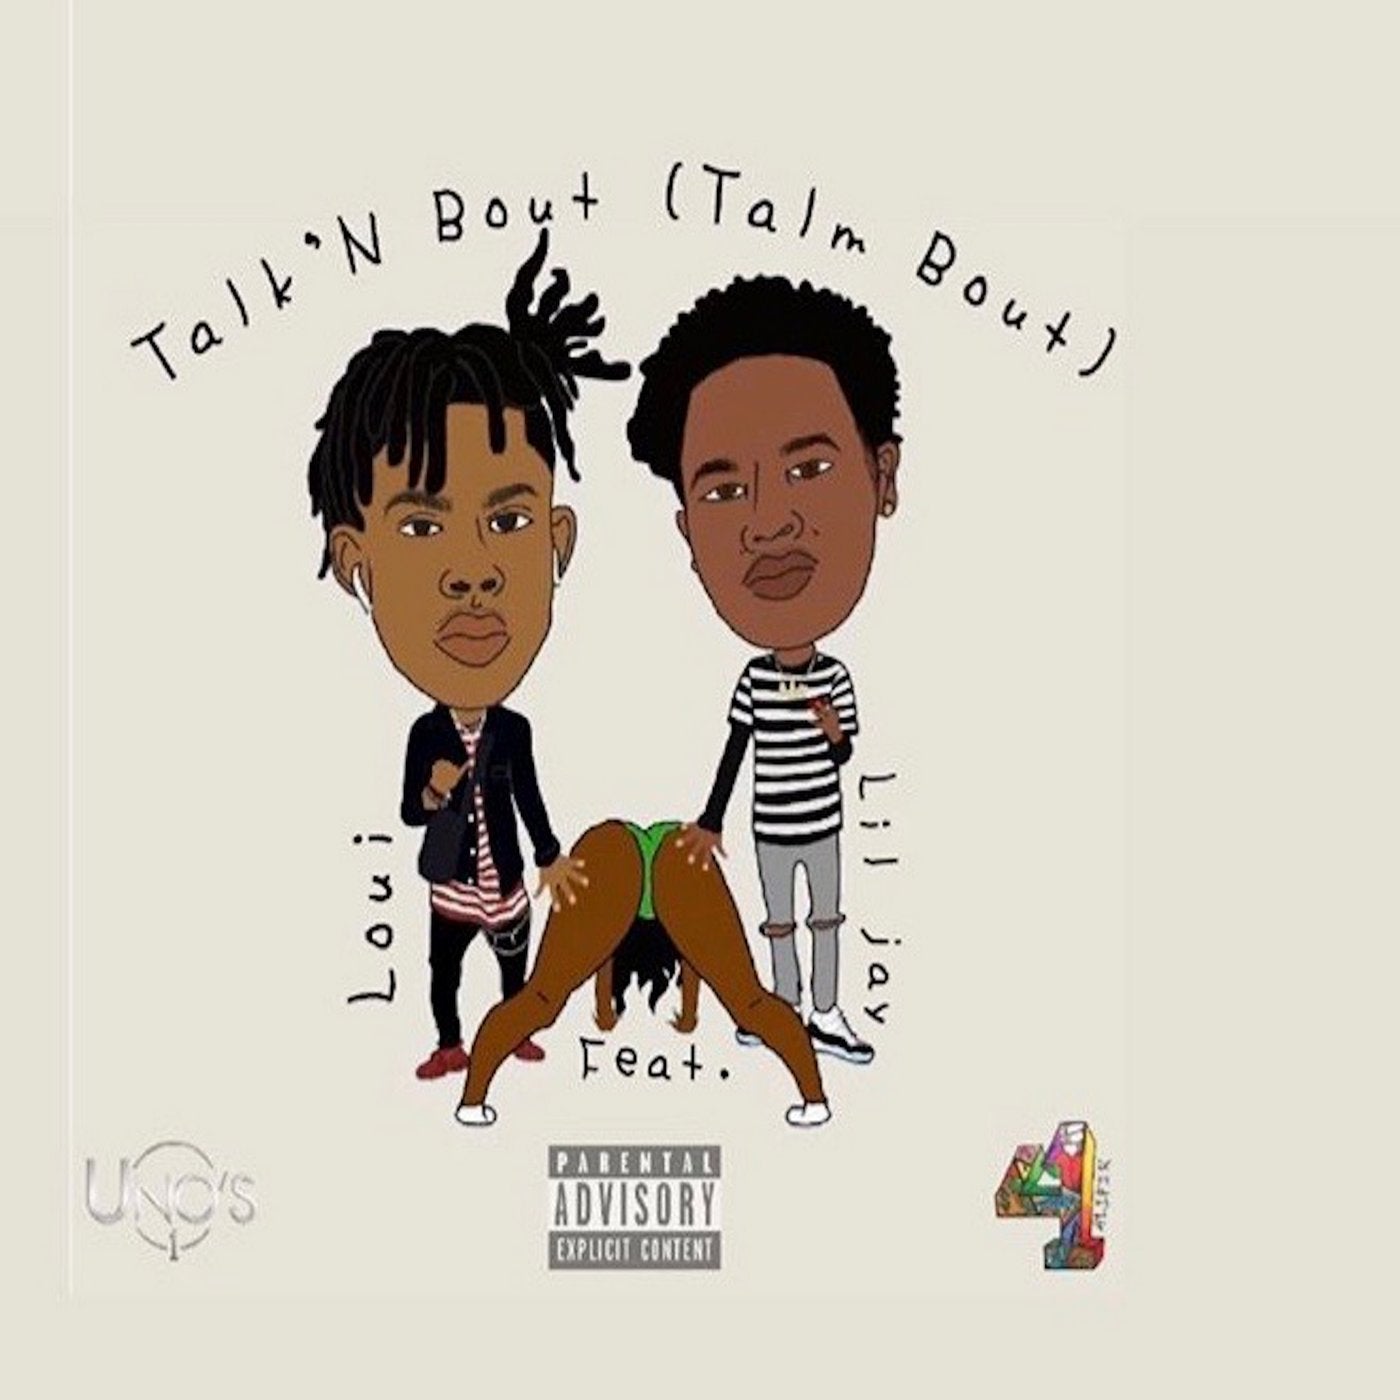 Talk N Bout (Talm Bout) [feat. Lil Jay]